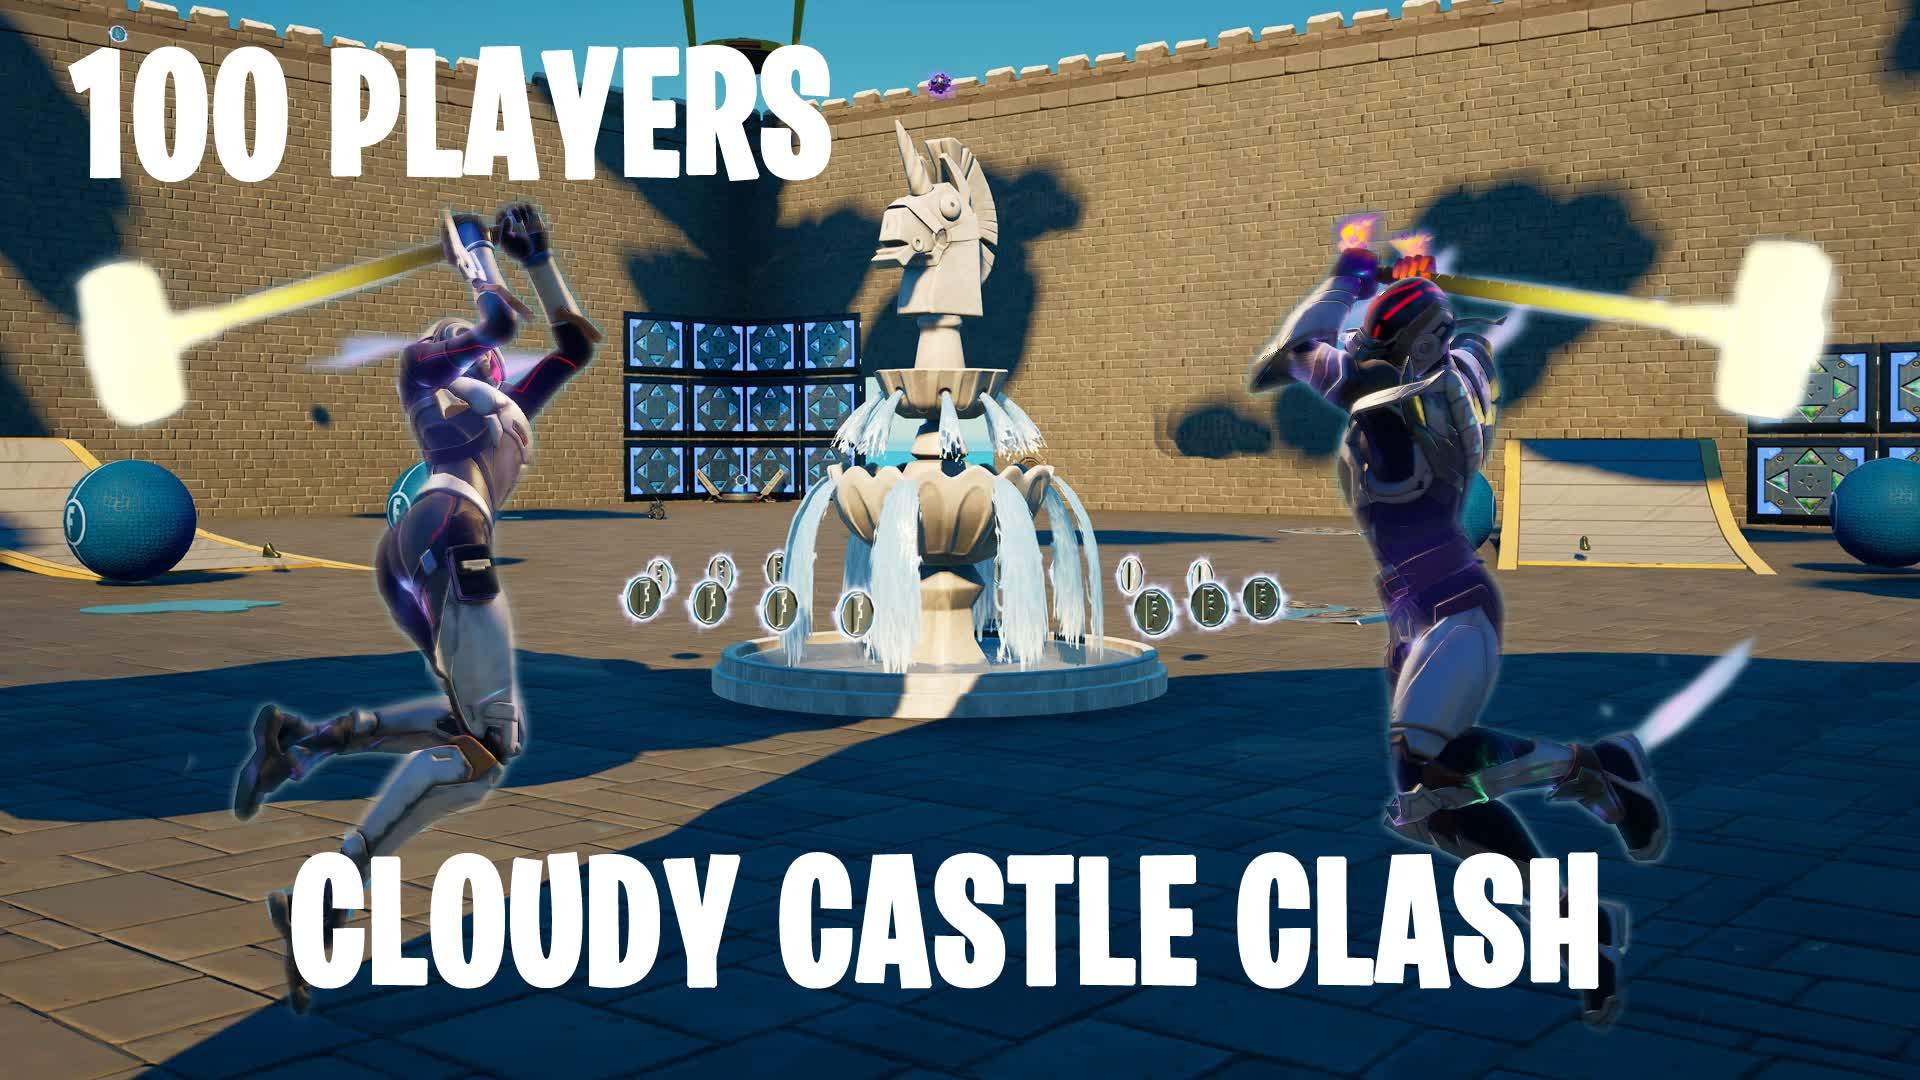 Cloudy Castle Clash